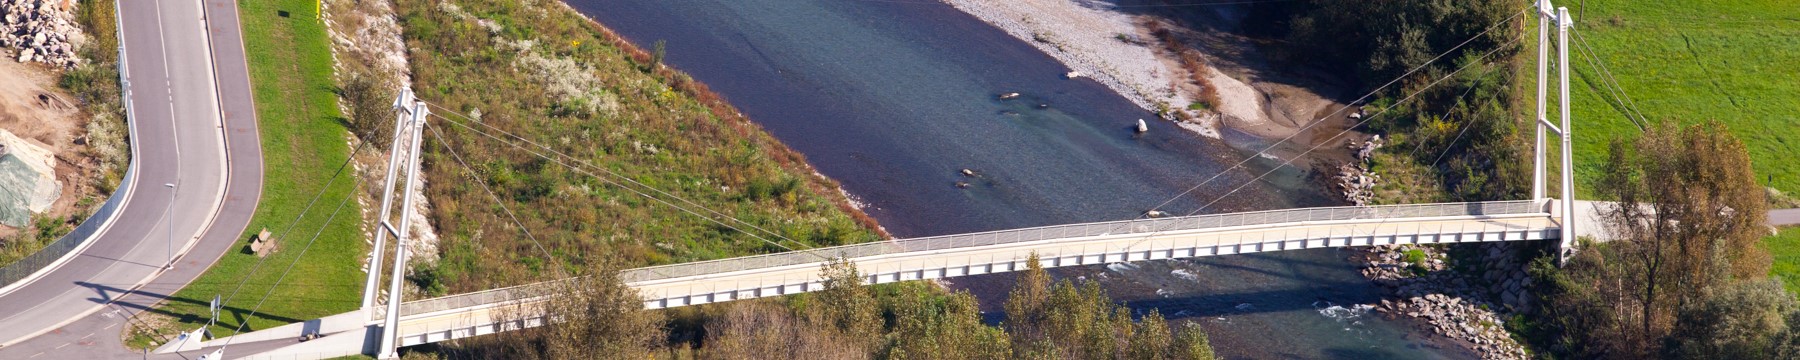 Passerella ciclopedonale Rogno-Piancamuno che attraversa il fiume Oglio